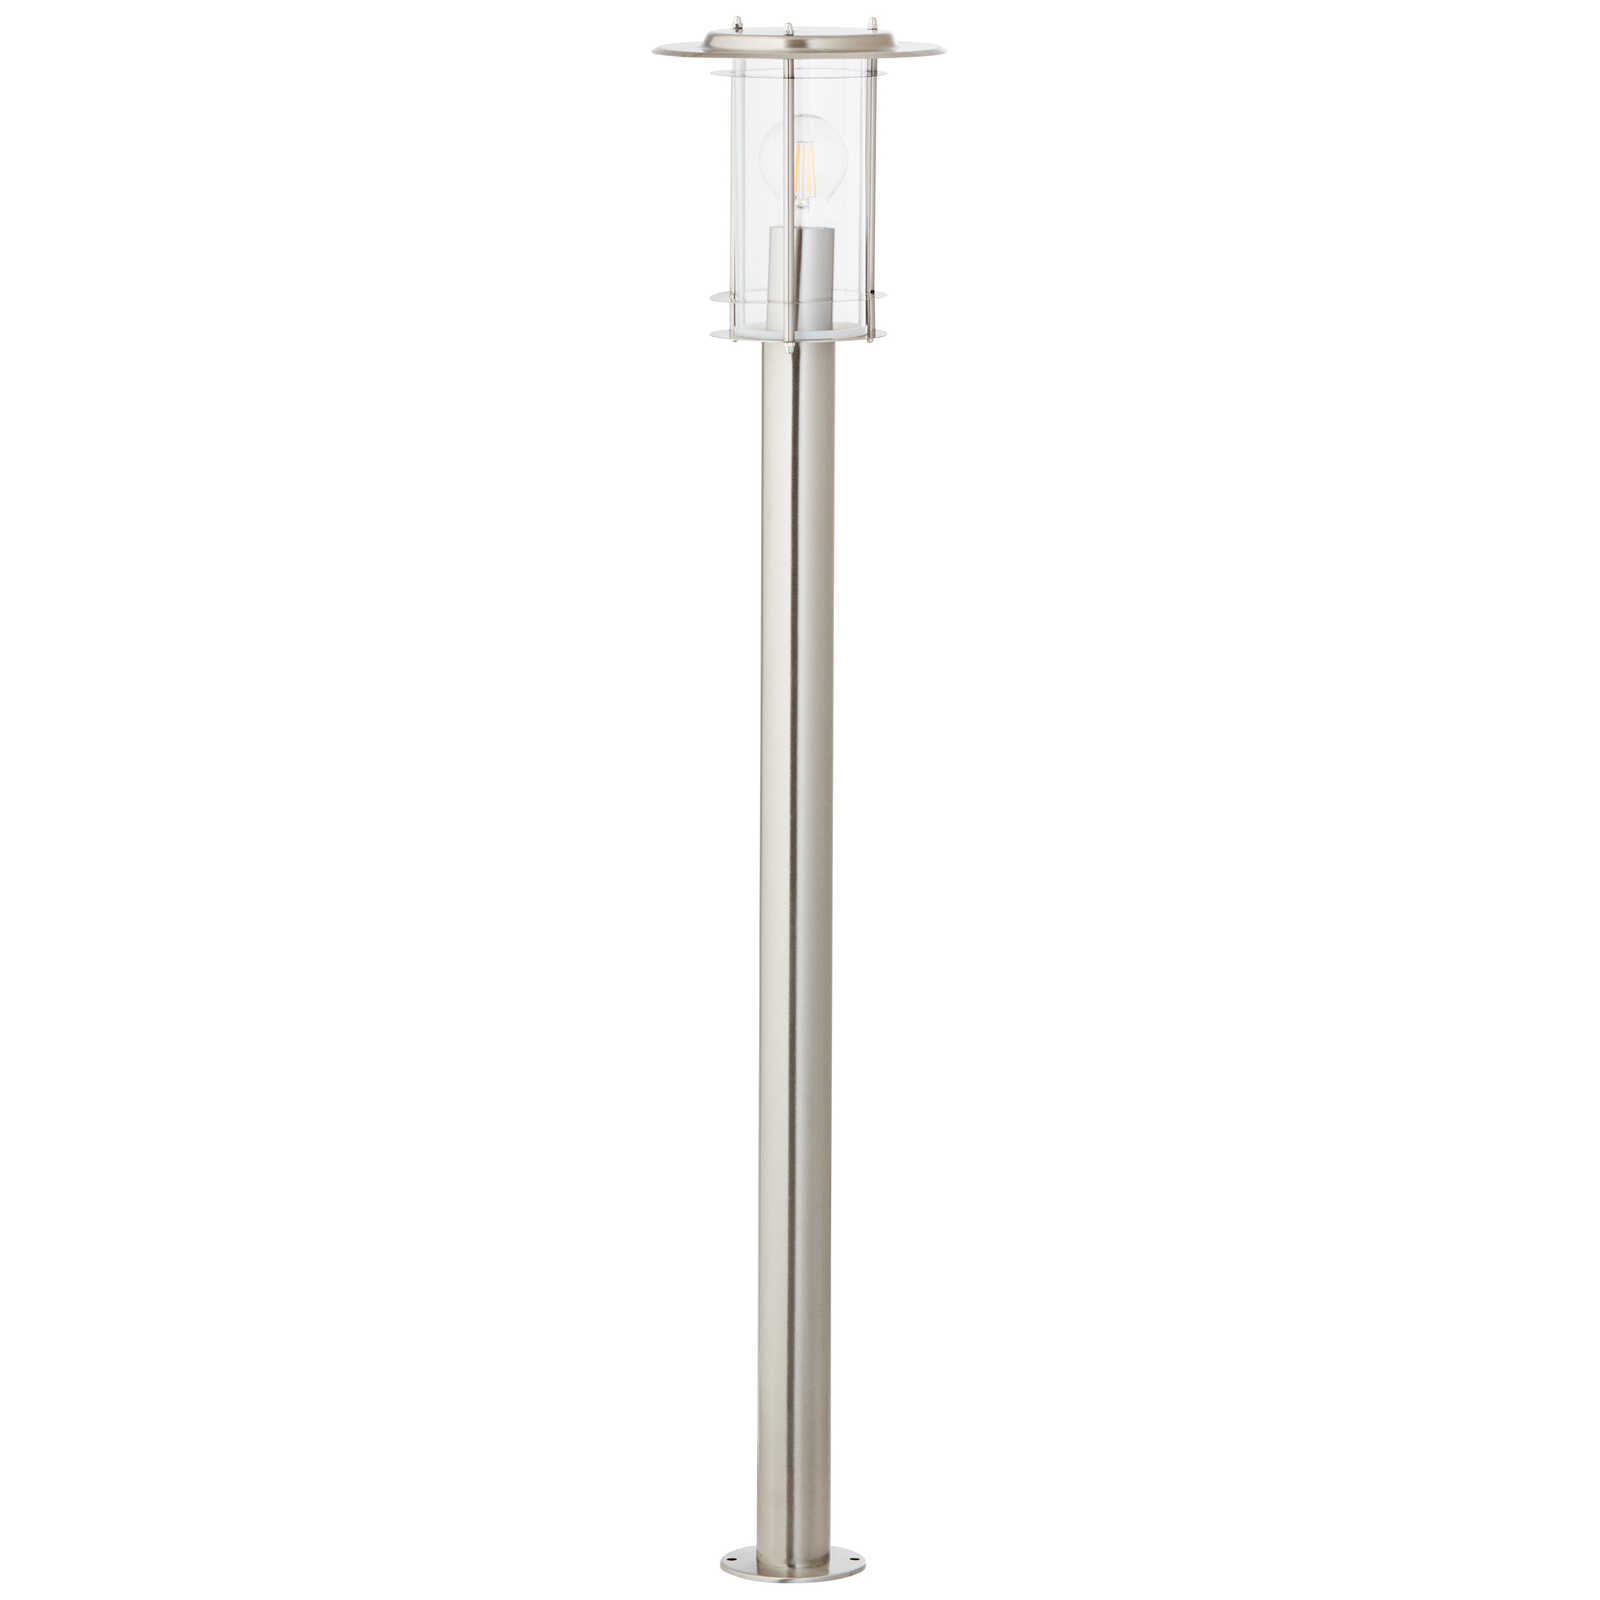             Lámpara de pie metálica para exterior - Wilma 2 - Metallic
        